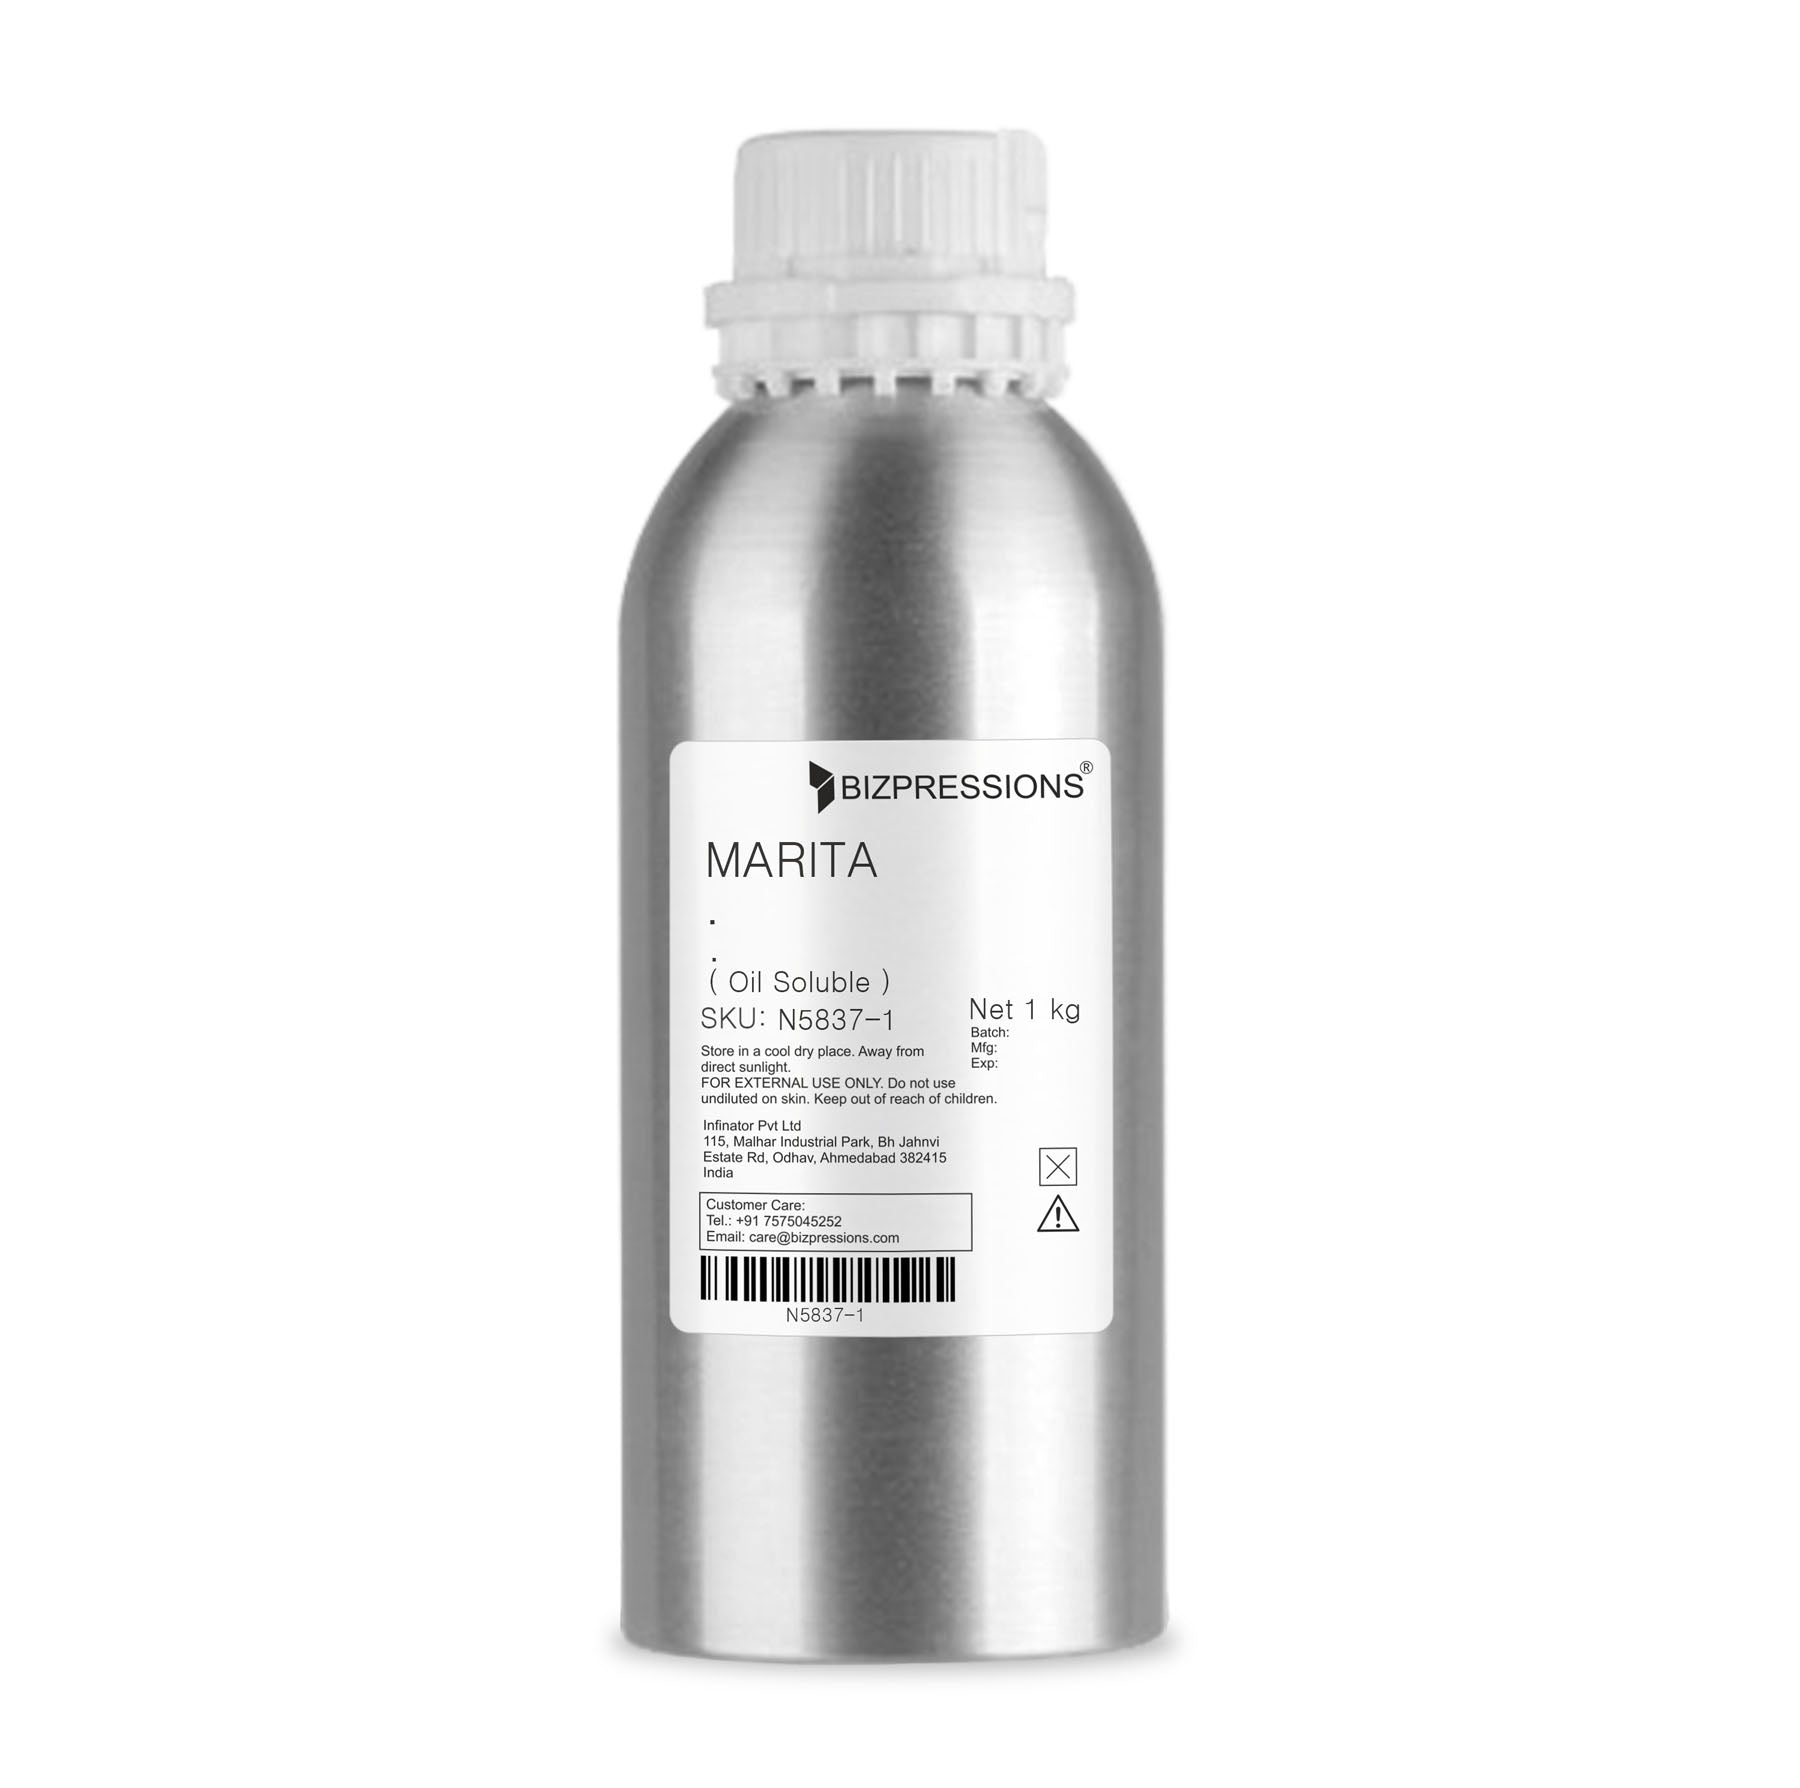 MARITA - Fragrance ( Oil Soluble ) - 1 kg